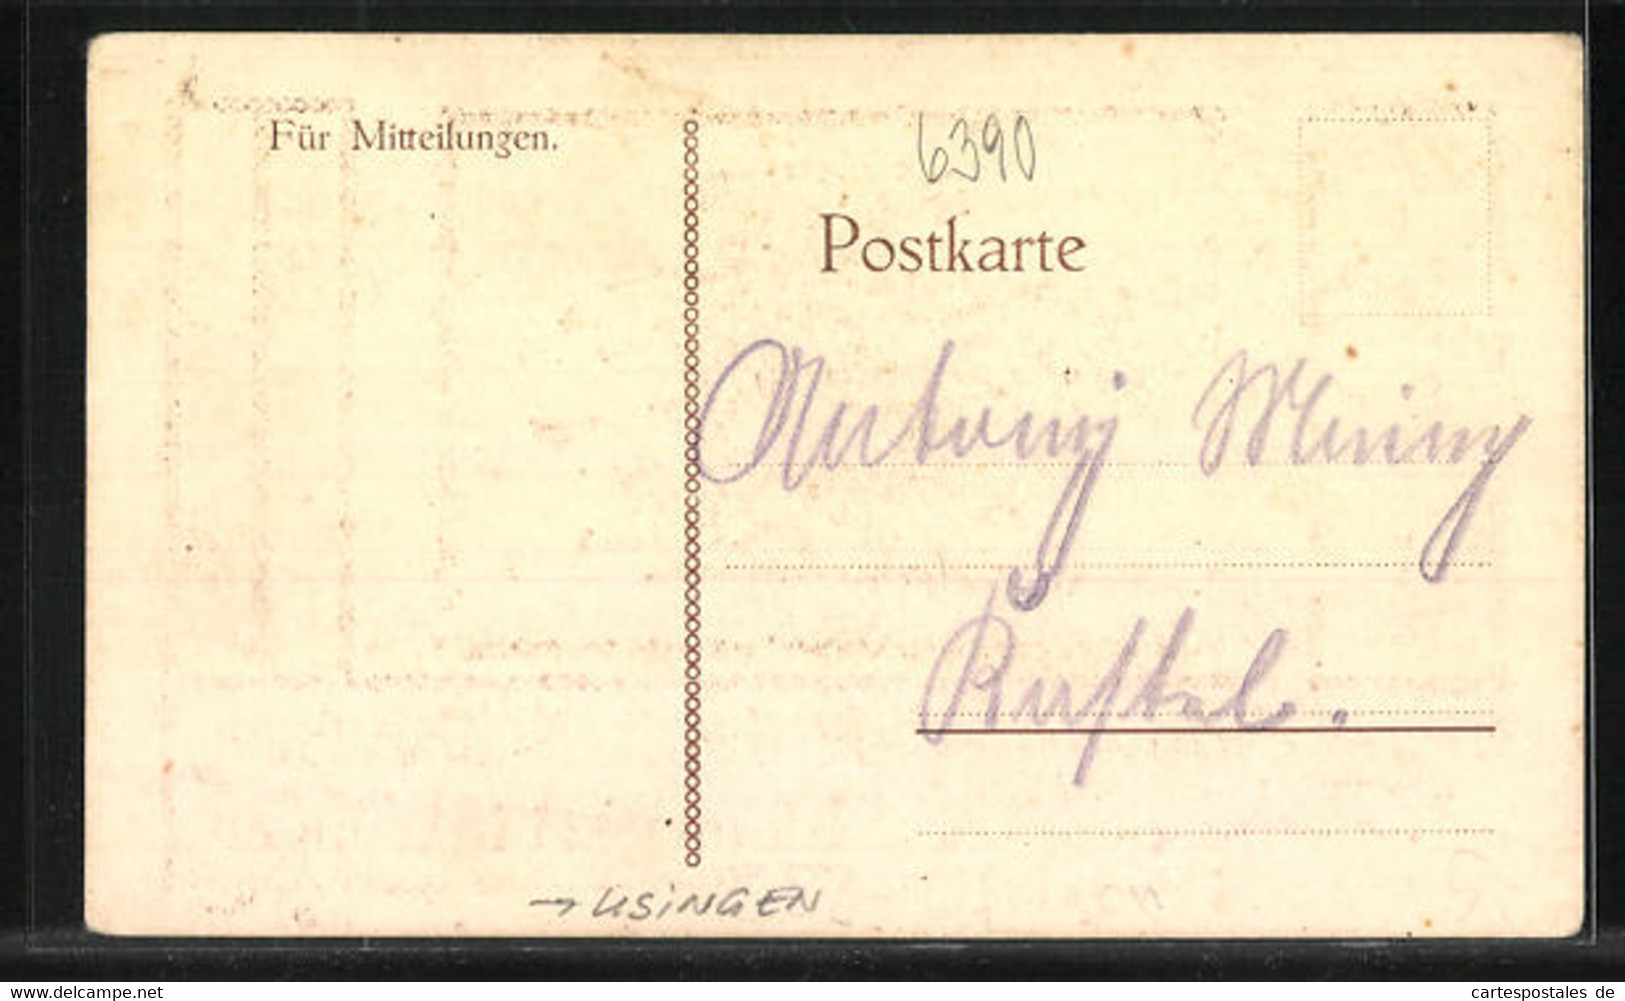 AK Usingen / Taunus, Erinnerung An Den 2. Nassauischen Bauerntag 1921 - Usingen